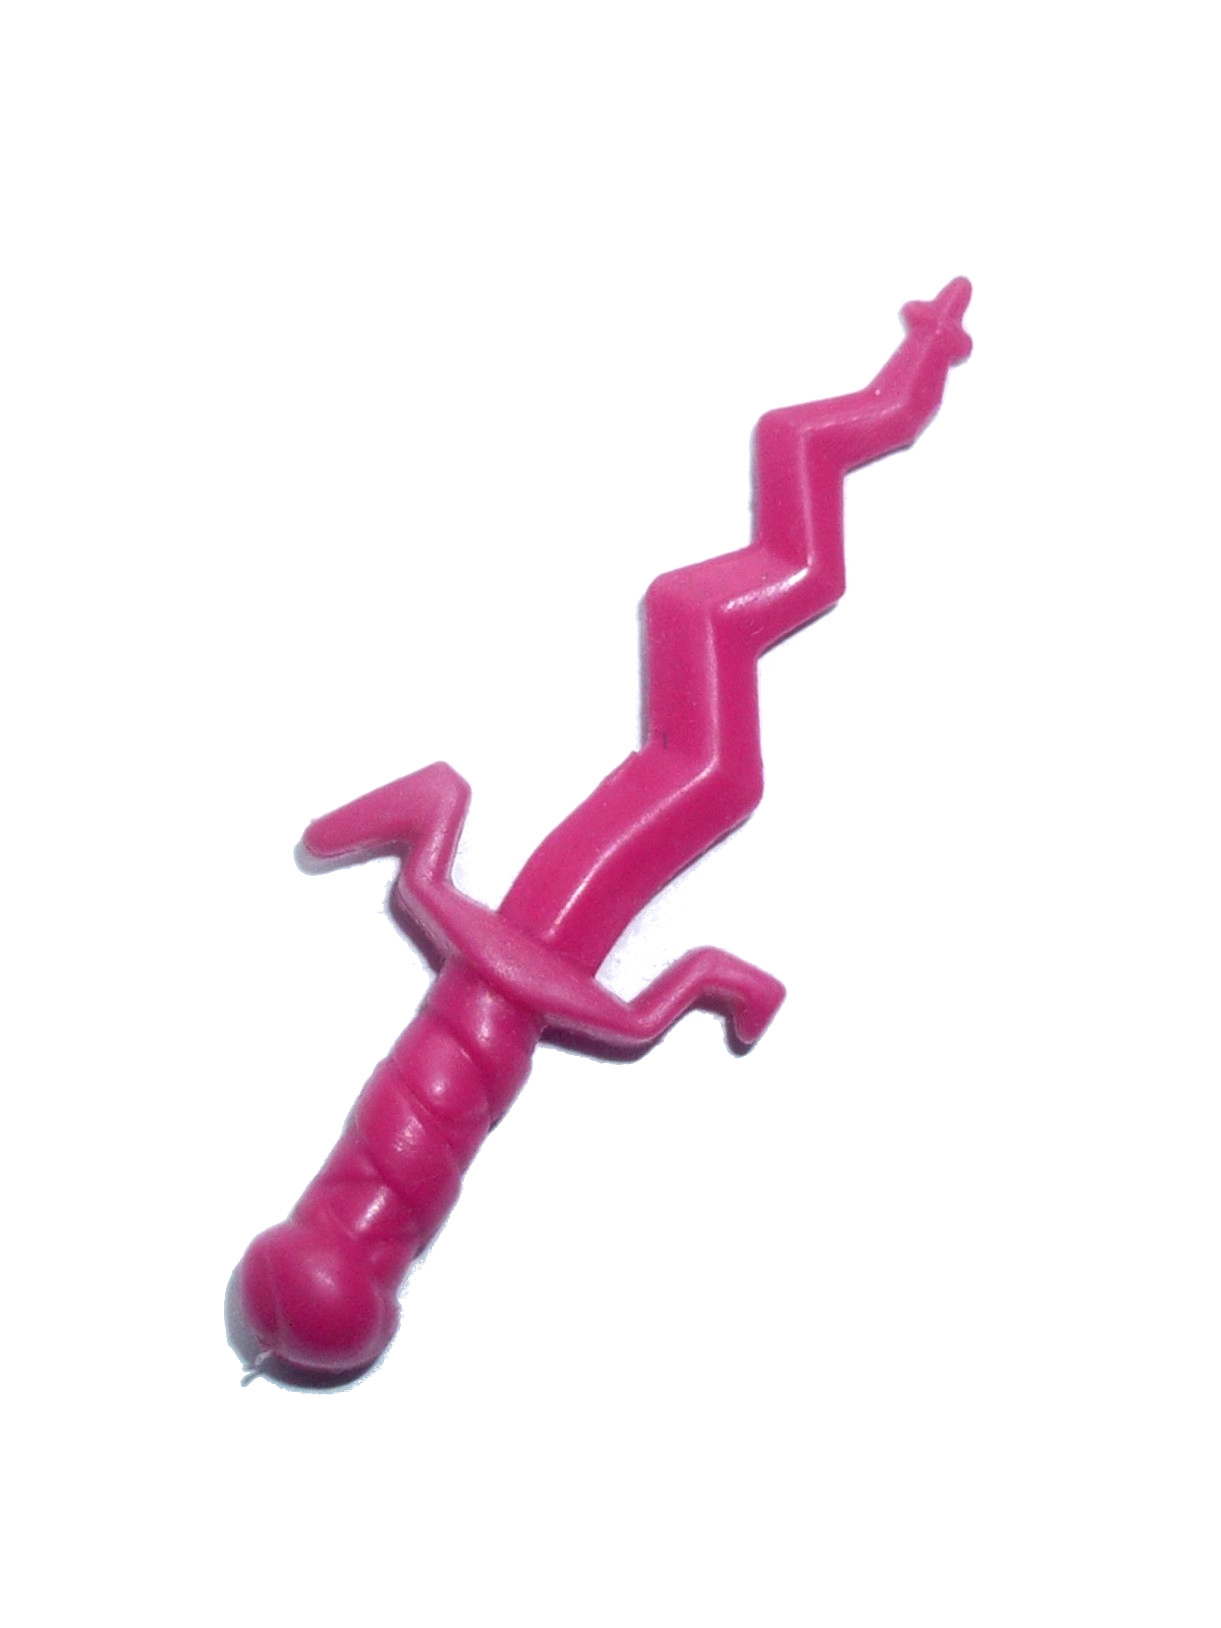 Slash knife / weapon 1990 Playmates Toys